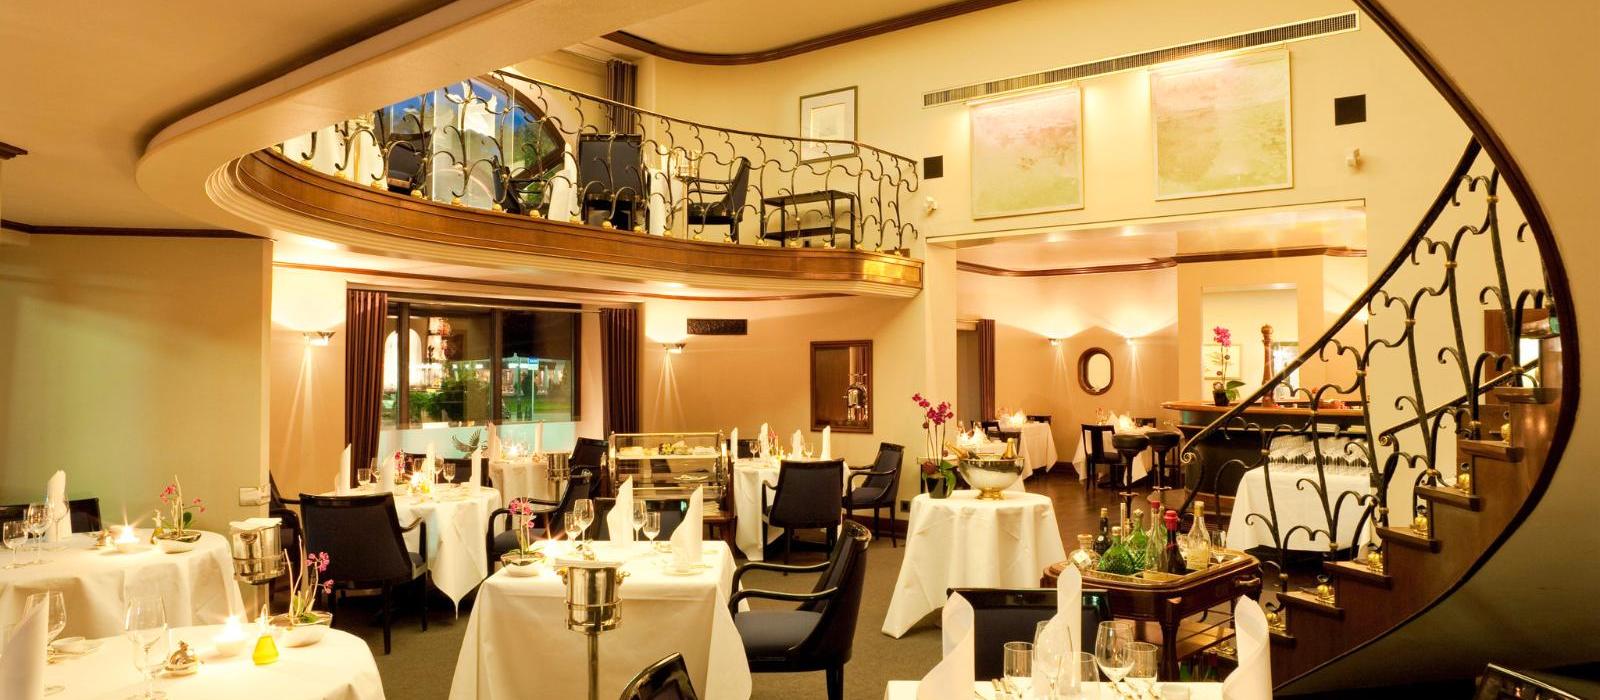 纳索尔霍夫酒店(Hotel Nassauer Hof) ENTE餐厅图片  www.lhw.cn